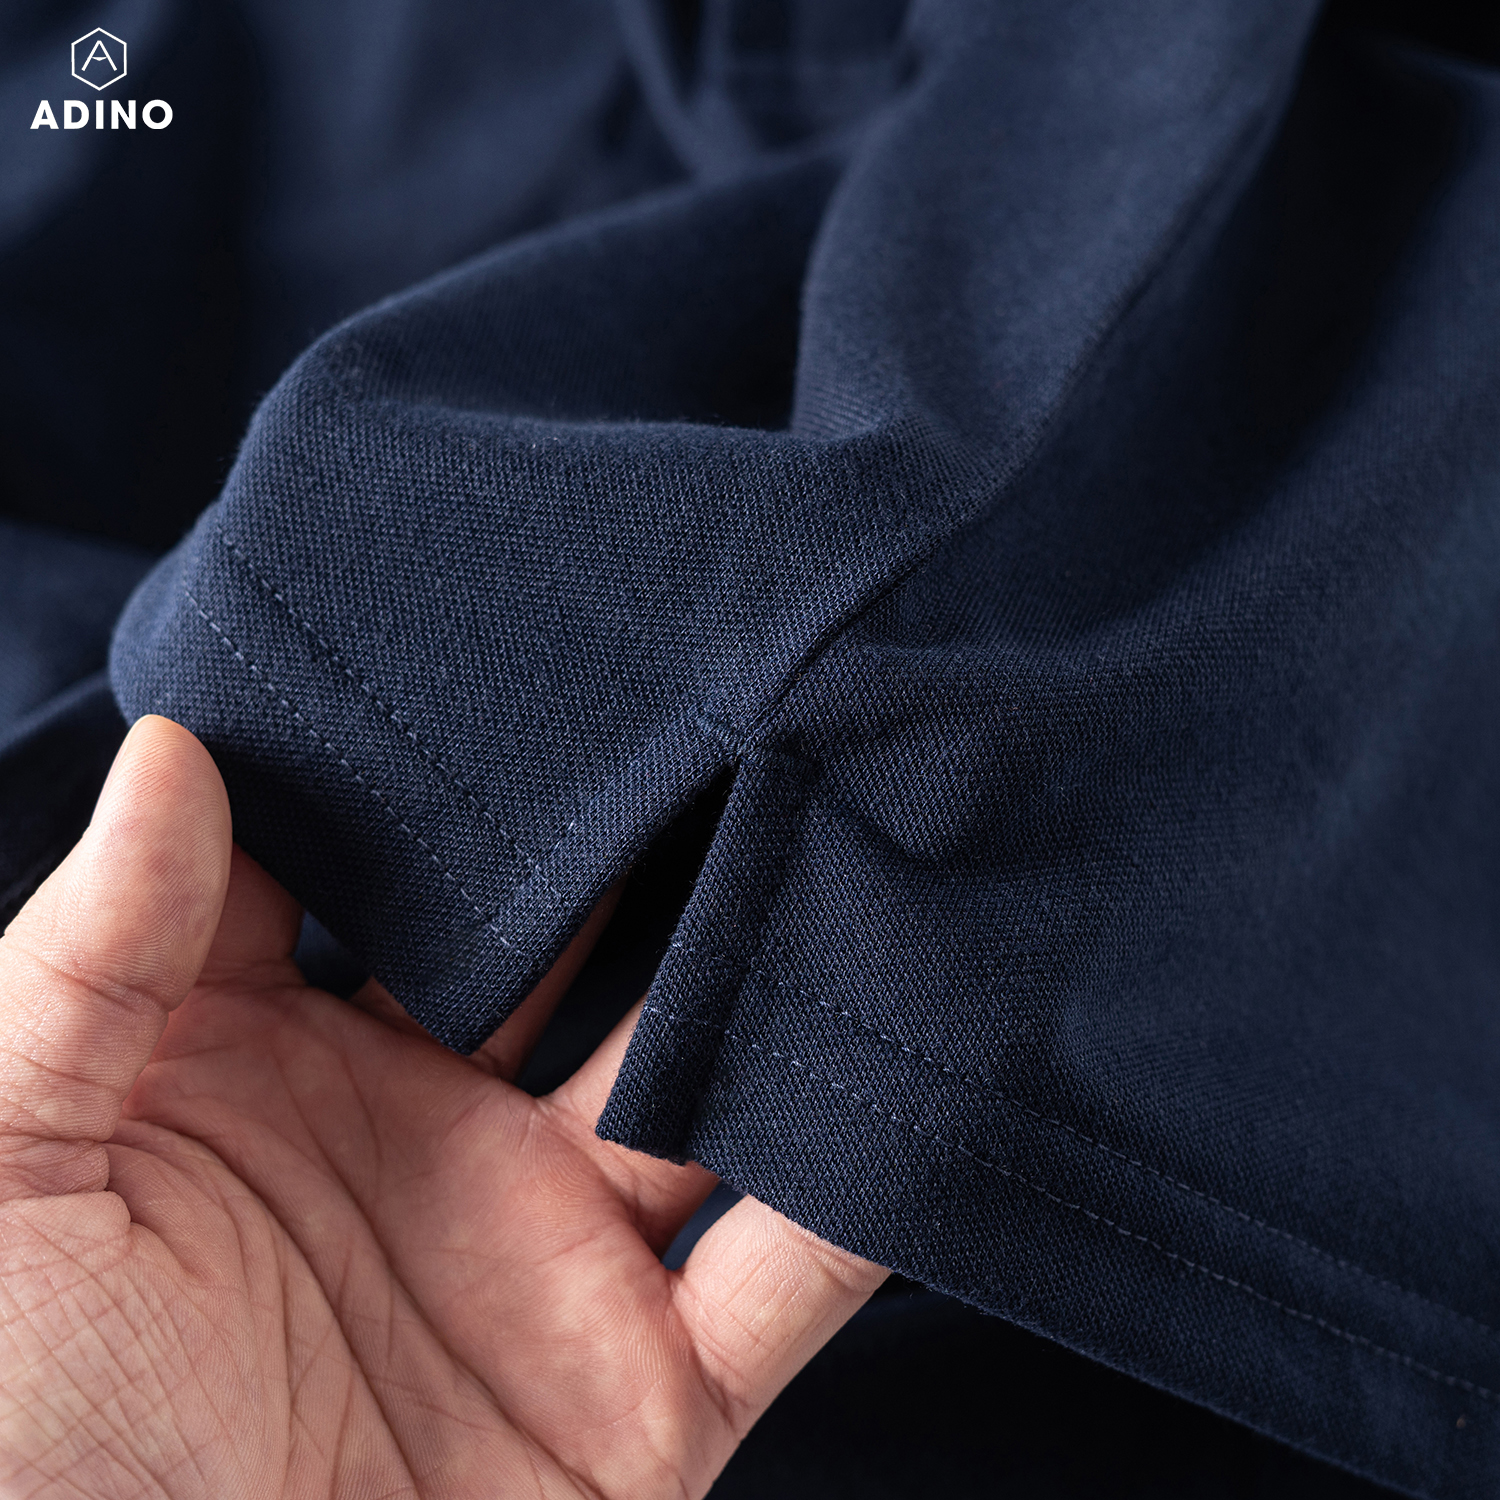 Áo polo nữ màu xanh đen phối viền chìm ADINO vải cotton polyester mềm dáng slimfit công sở hơi ôm trẻ trung APN03